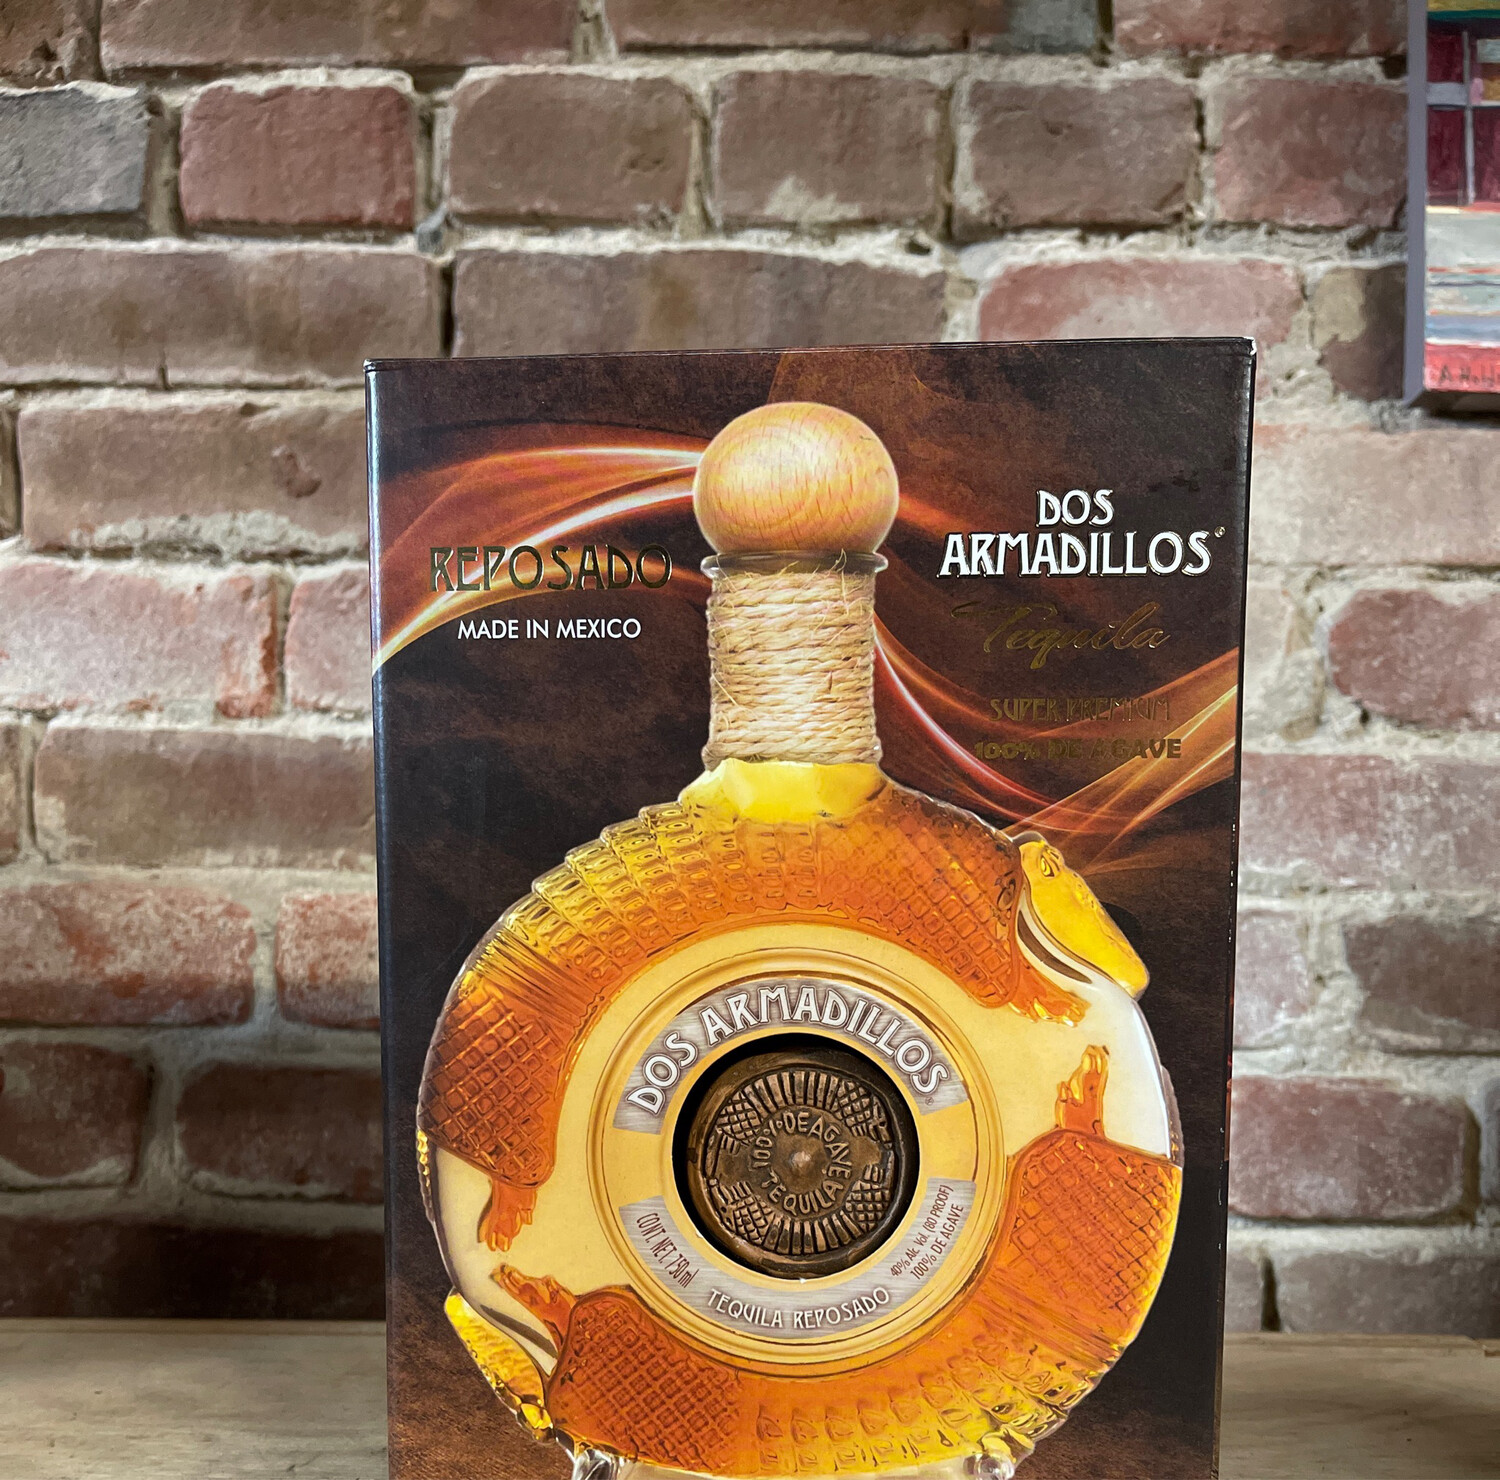 Dos Armadillos Tequila Reposado 750ml